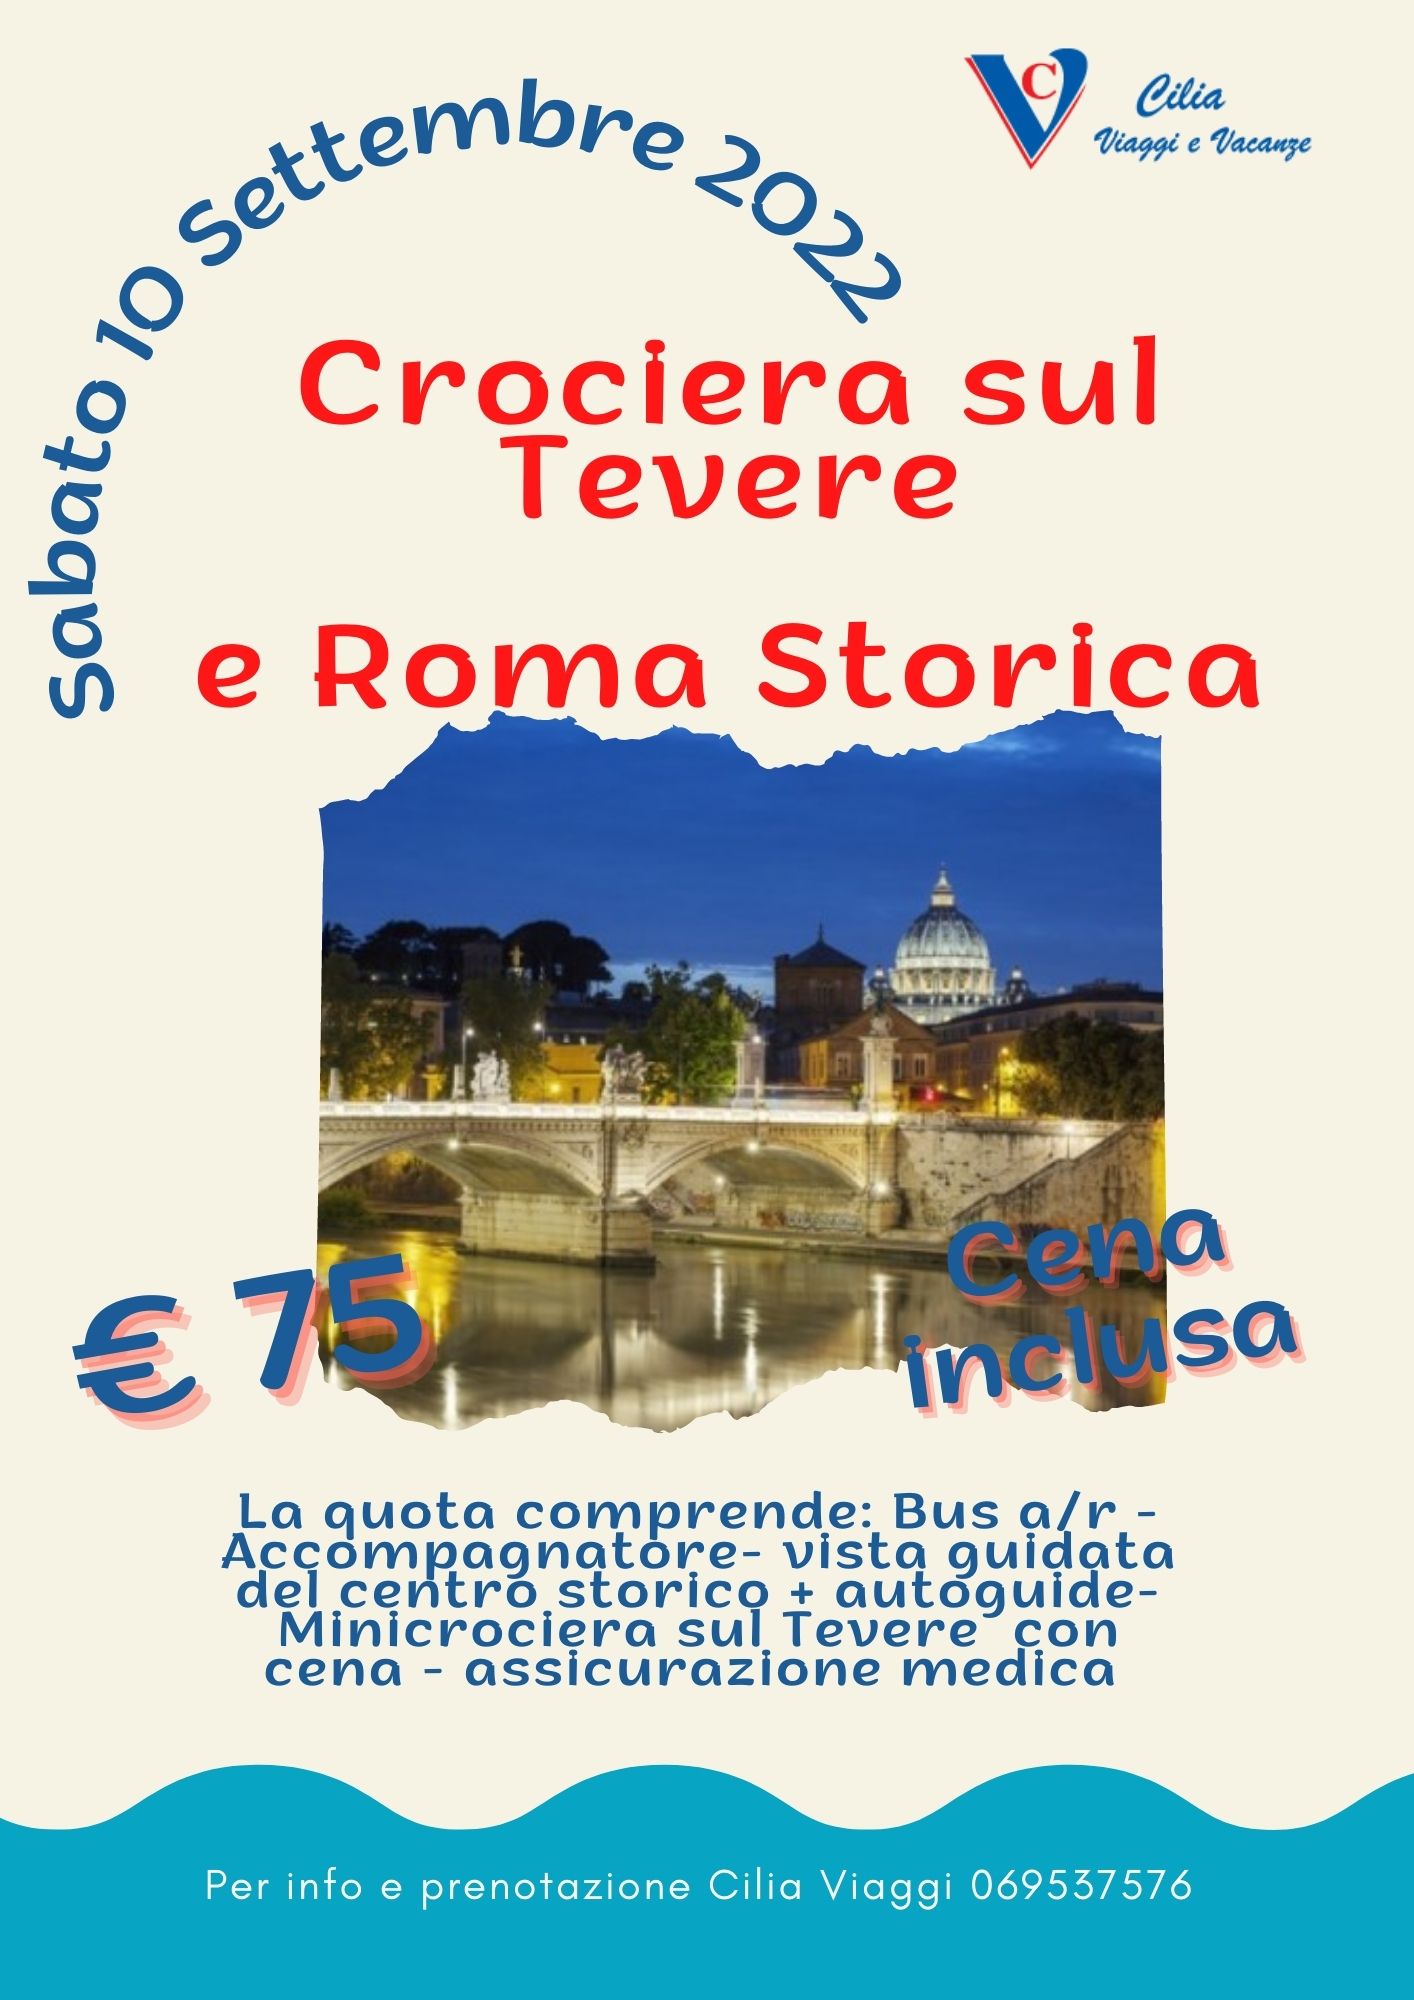 CROCIERA SUL TEVERE E ROMA STORICA <br> sabato 10 settembre <br> Euro 75,00 p.p.